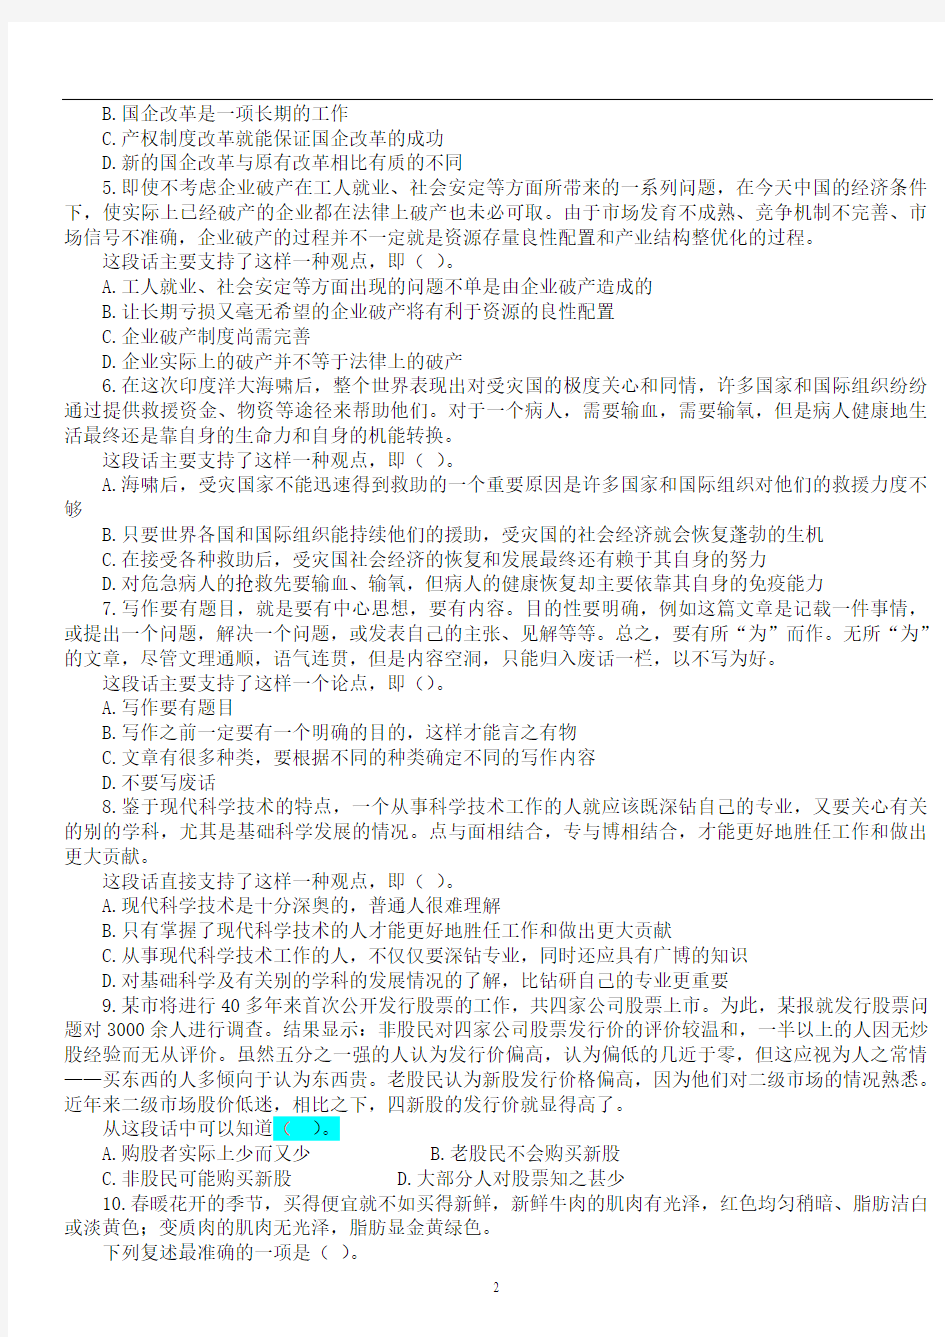 2011中国农业银行招聘考试笔试试题